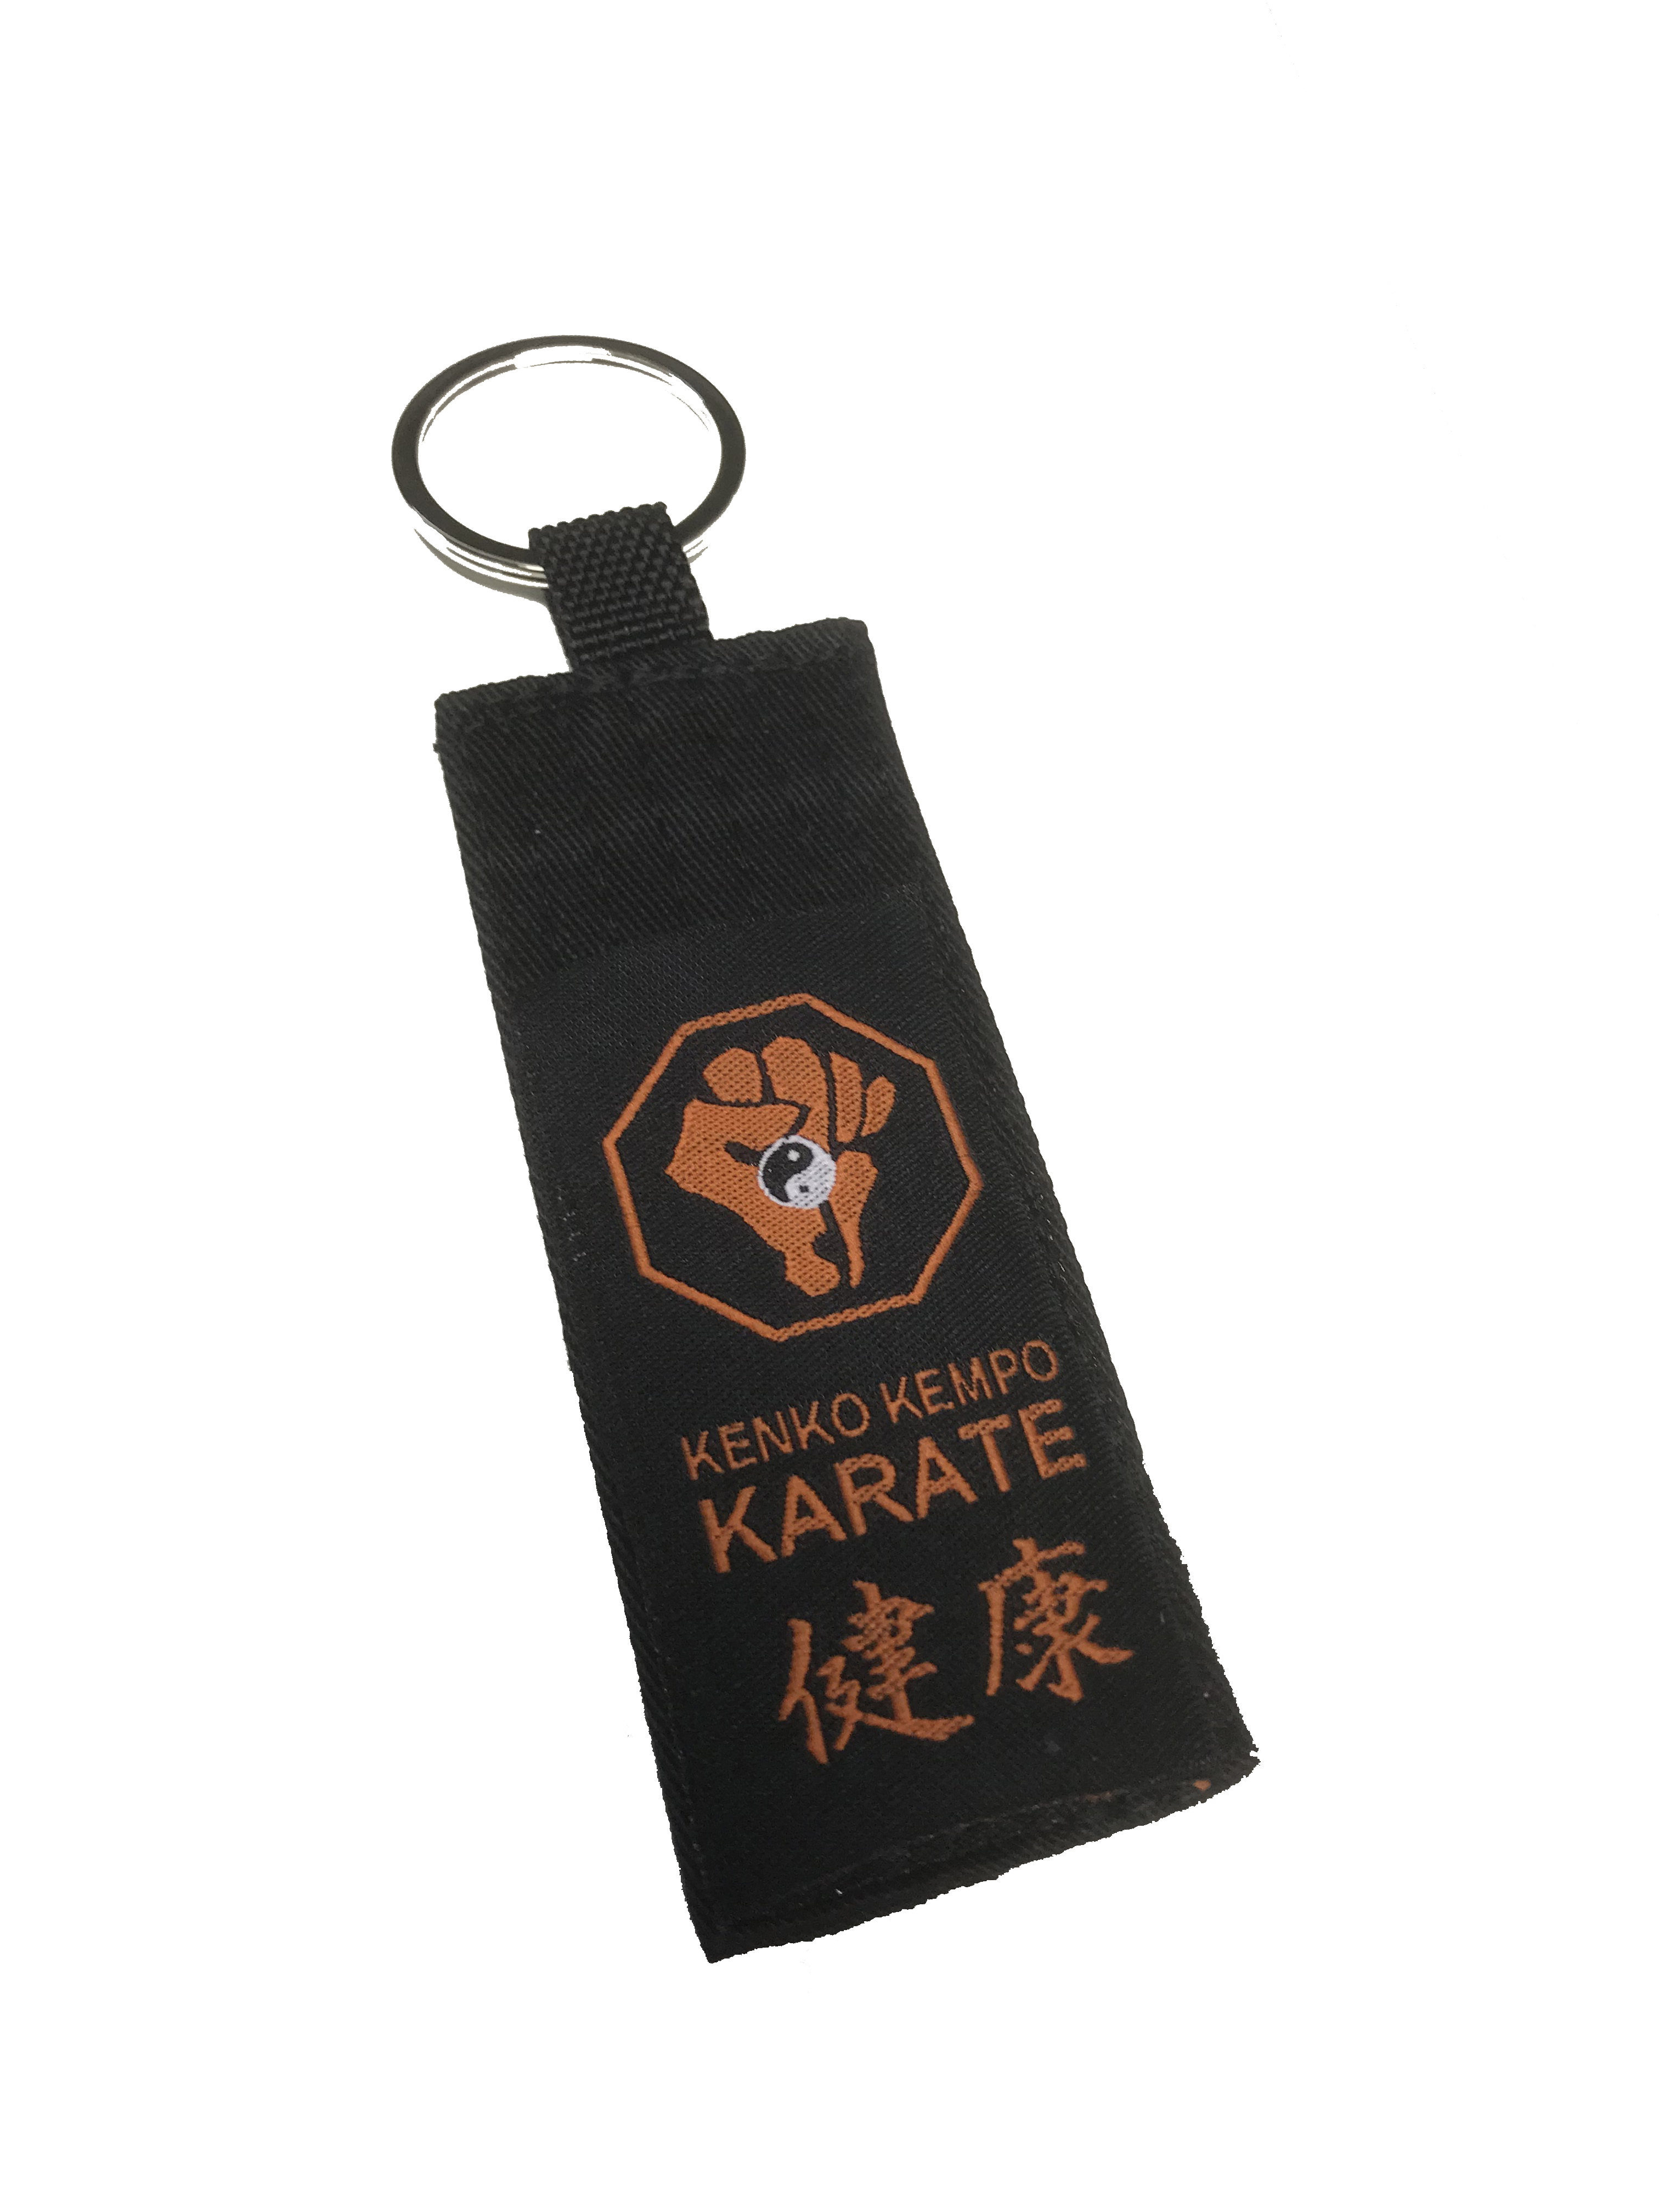 Kenko Kempo Karate Schwarzgurt Schlüsselanhänger